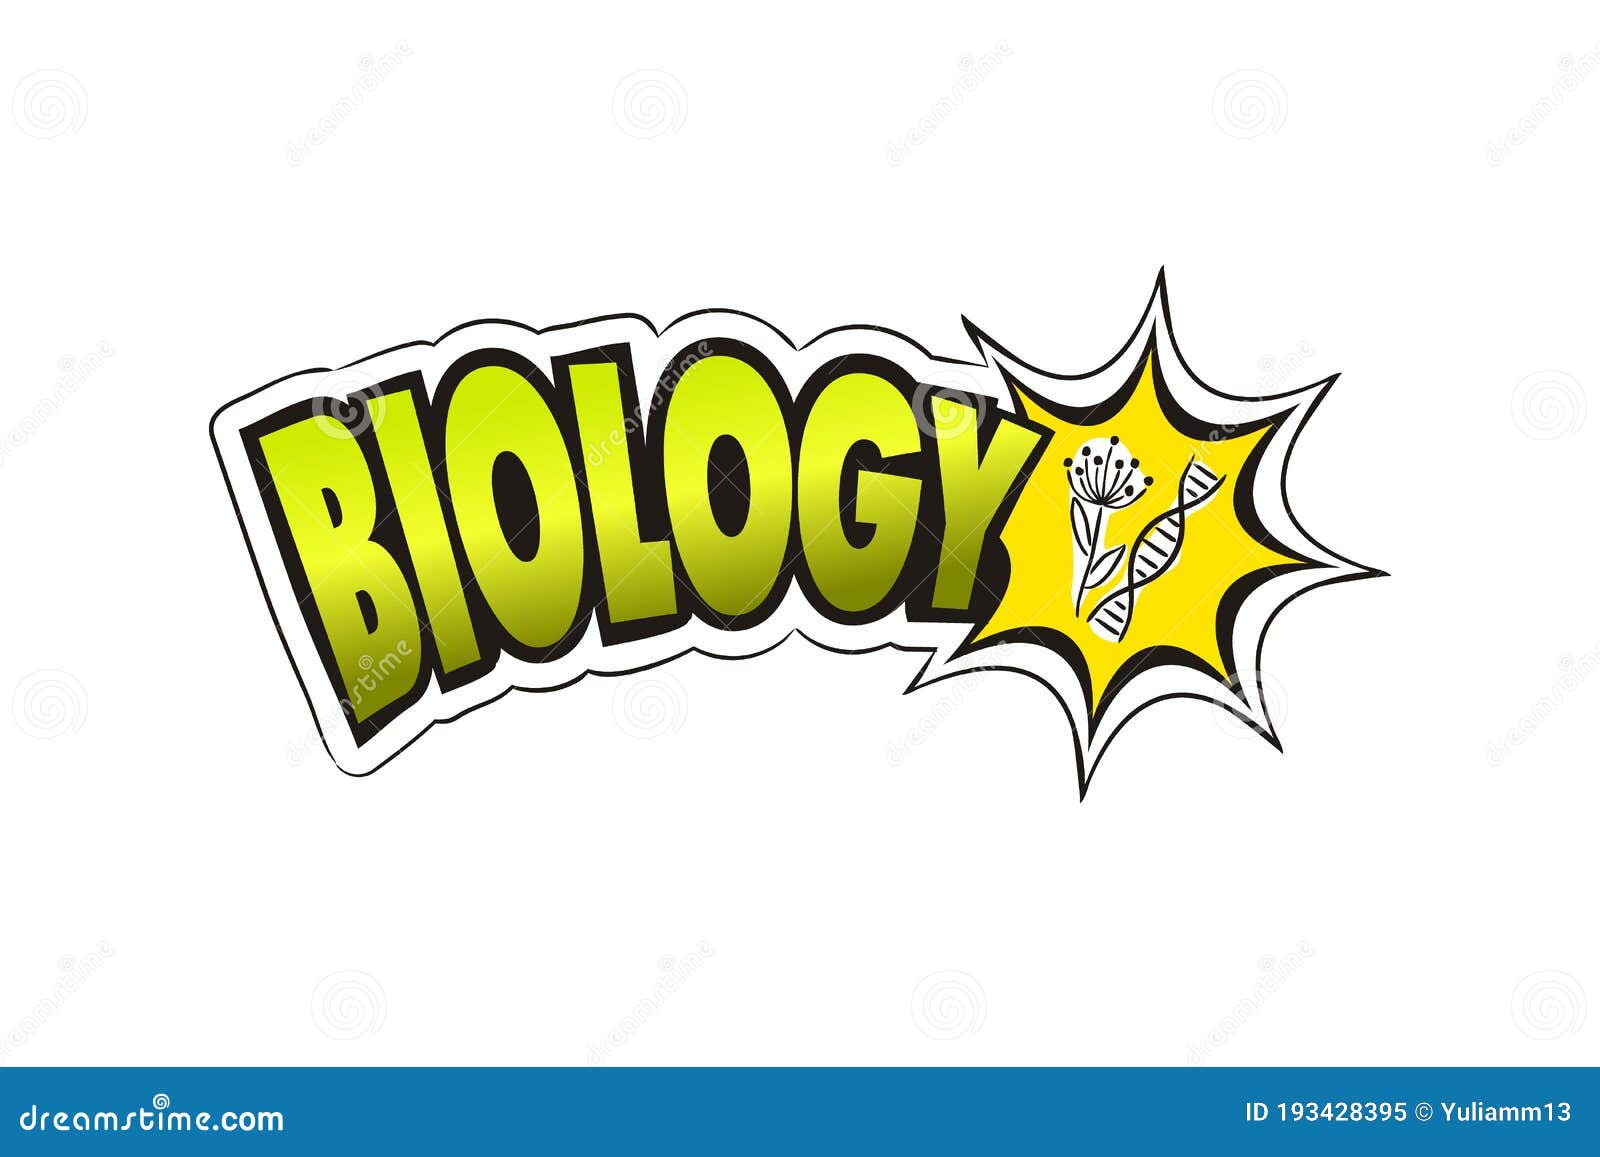 Molecular biology logo concept designs on Craiyon